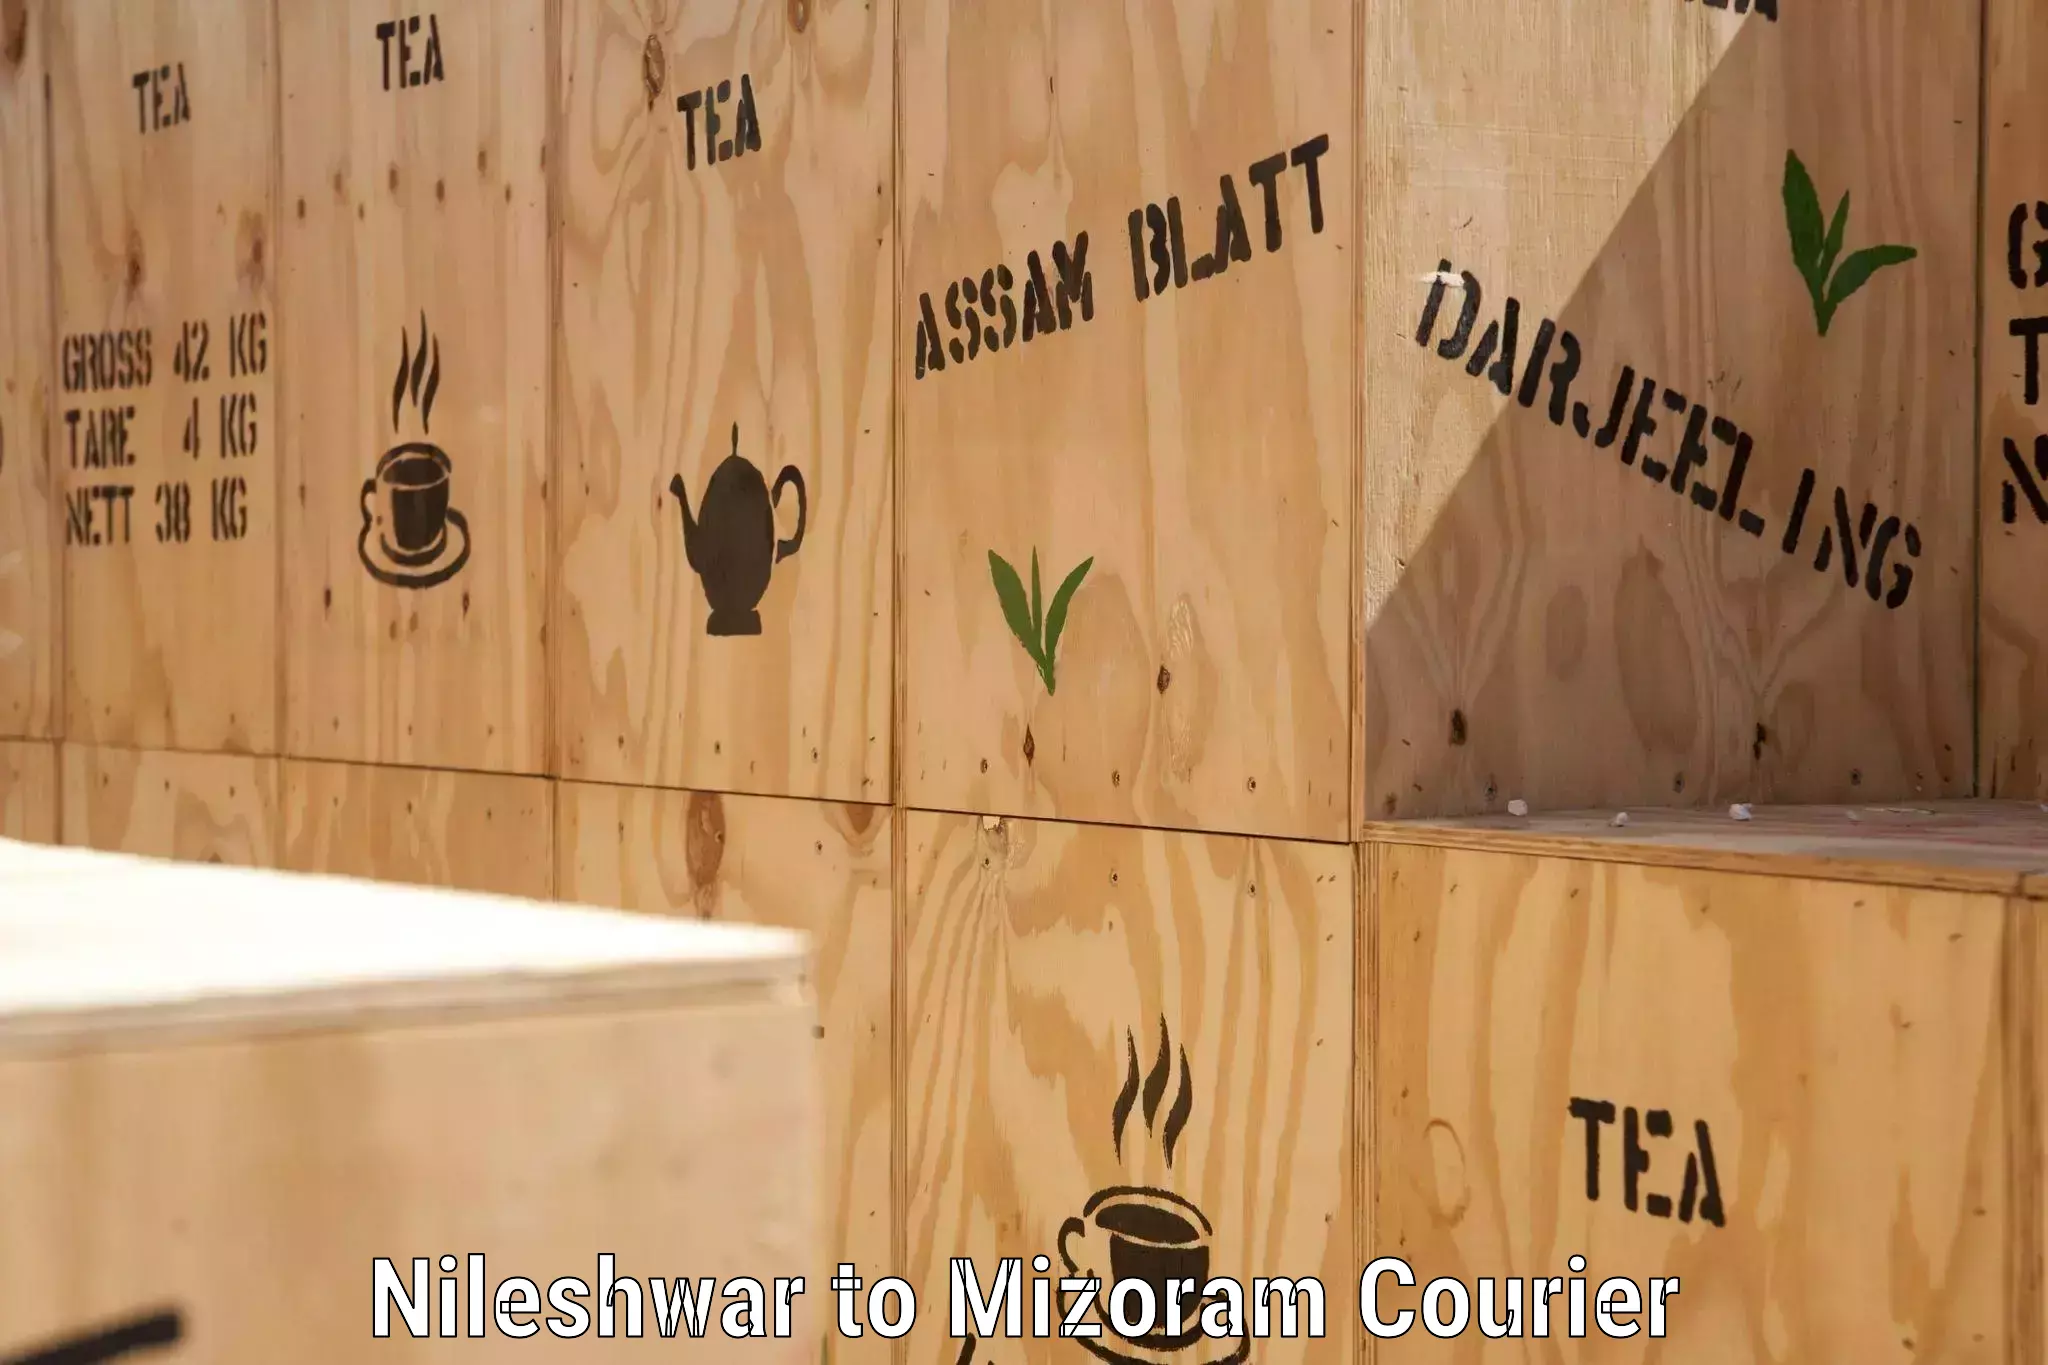 Customer-centric shipping Nileshwar to Darlawn